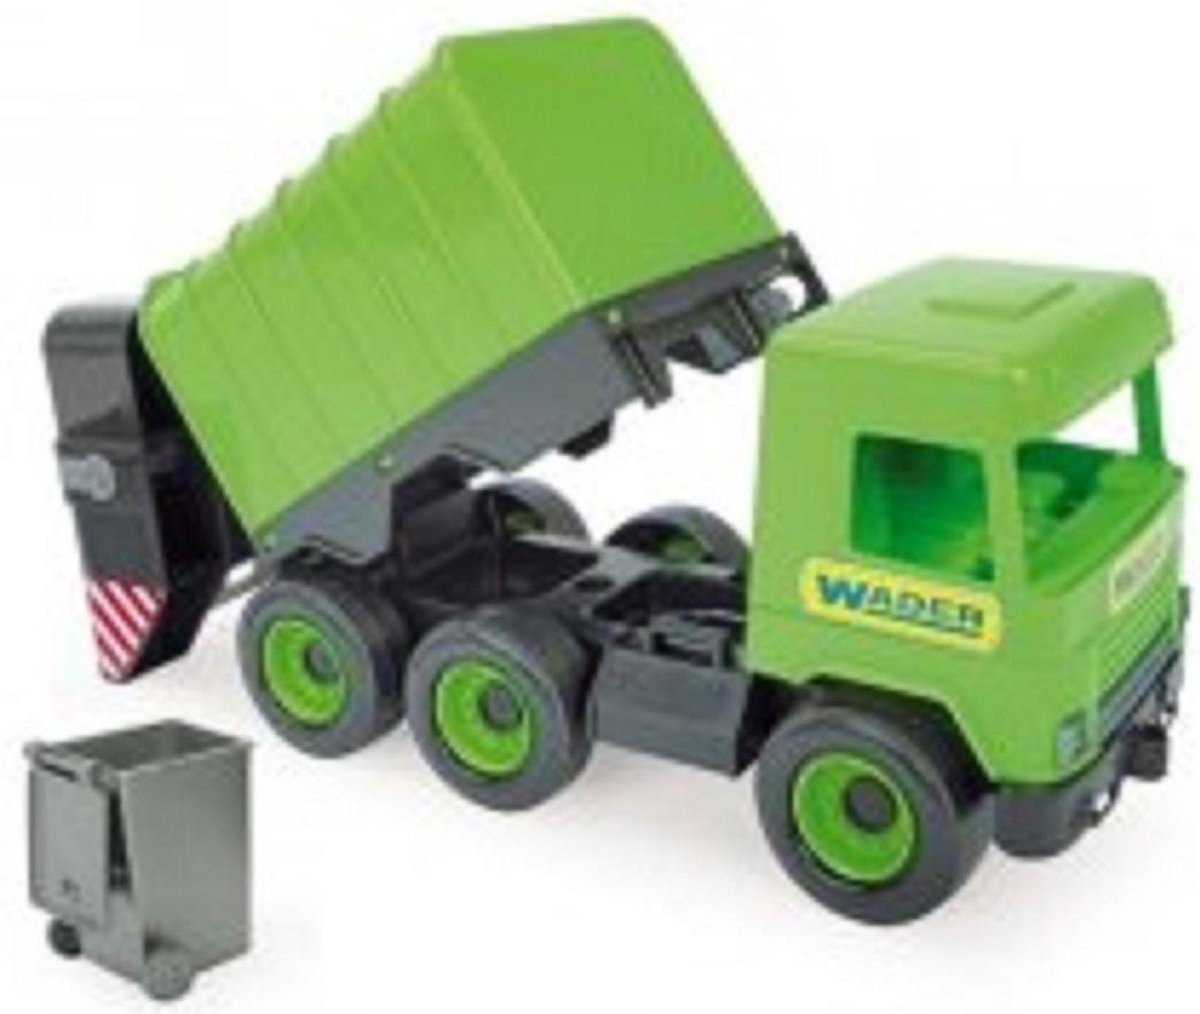 Wader Middle Truck Vuilniswagen groen in doos